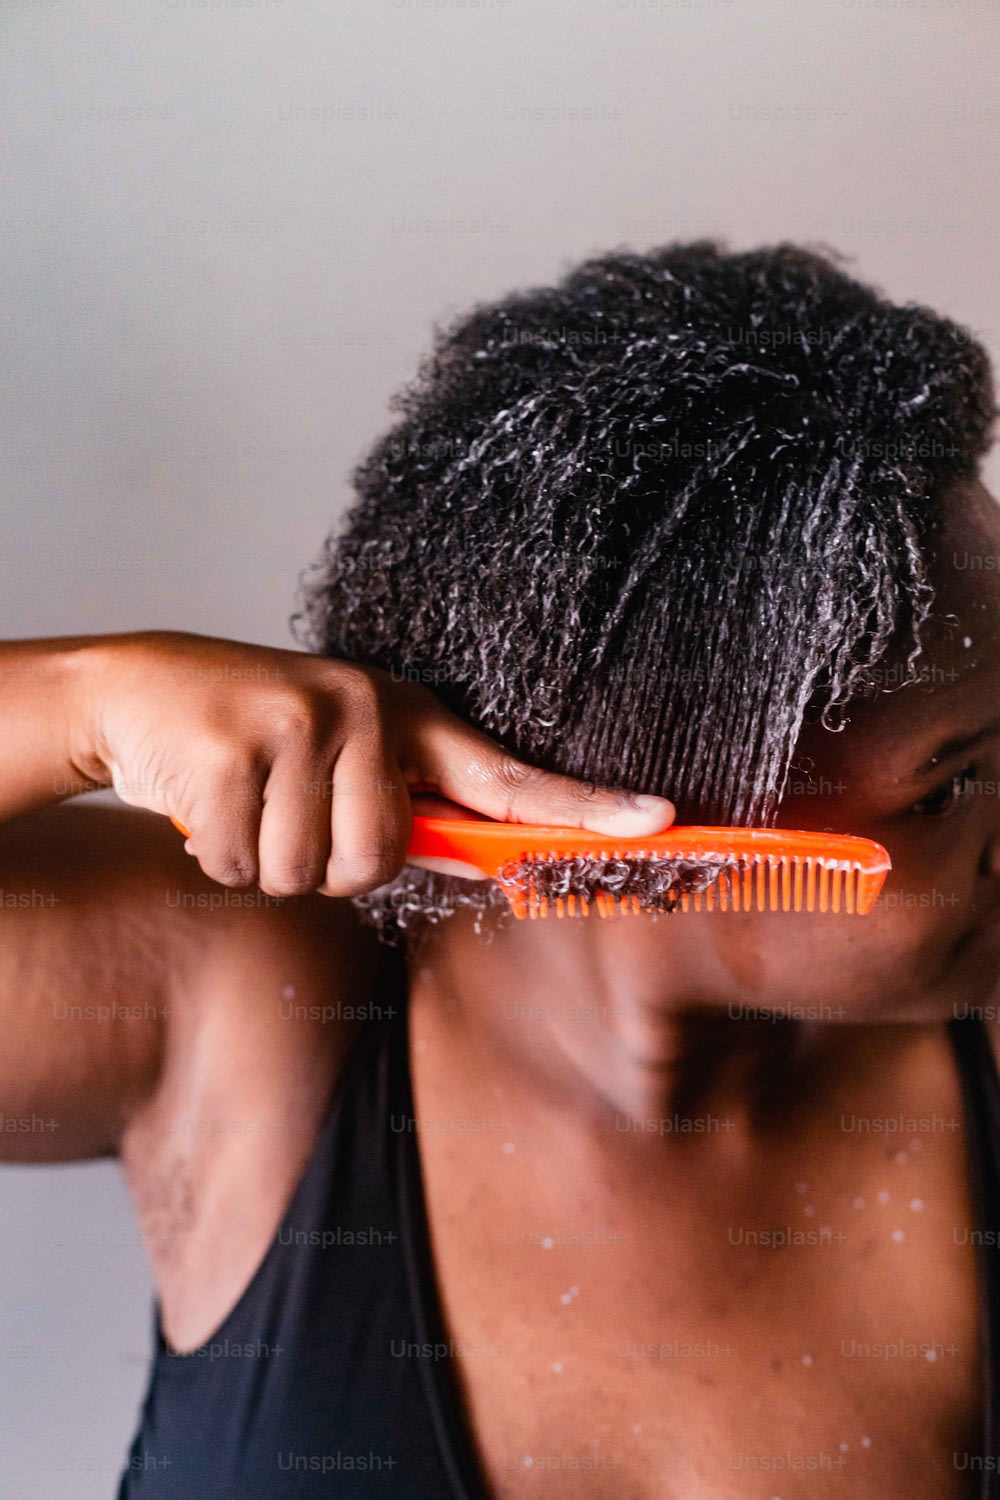 Un uomo si sta spazzolando i capelli con un pettine arancione